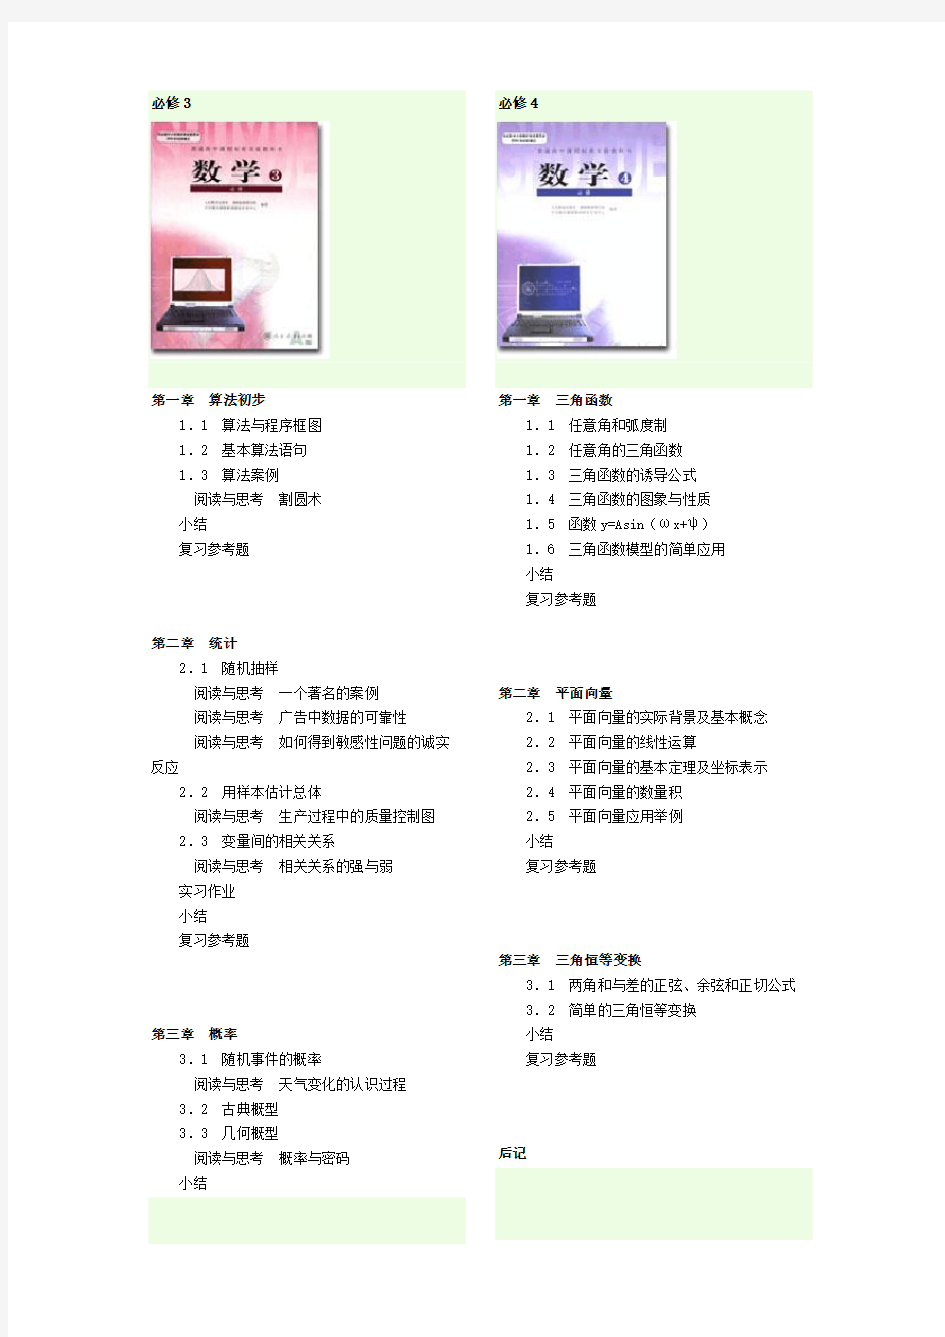 广东省高中数学课本及目录 (1)